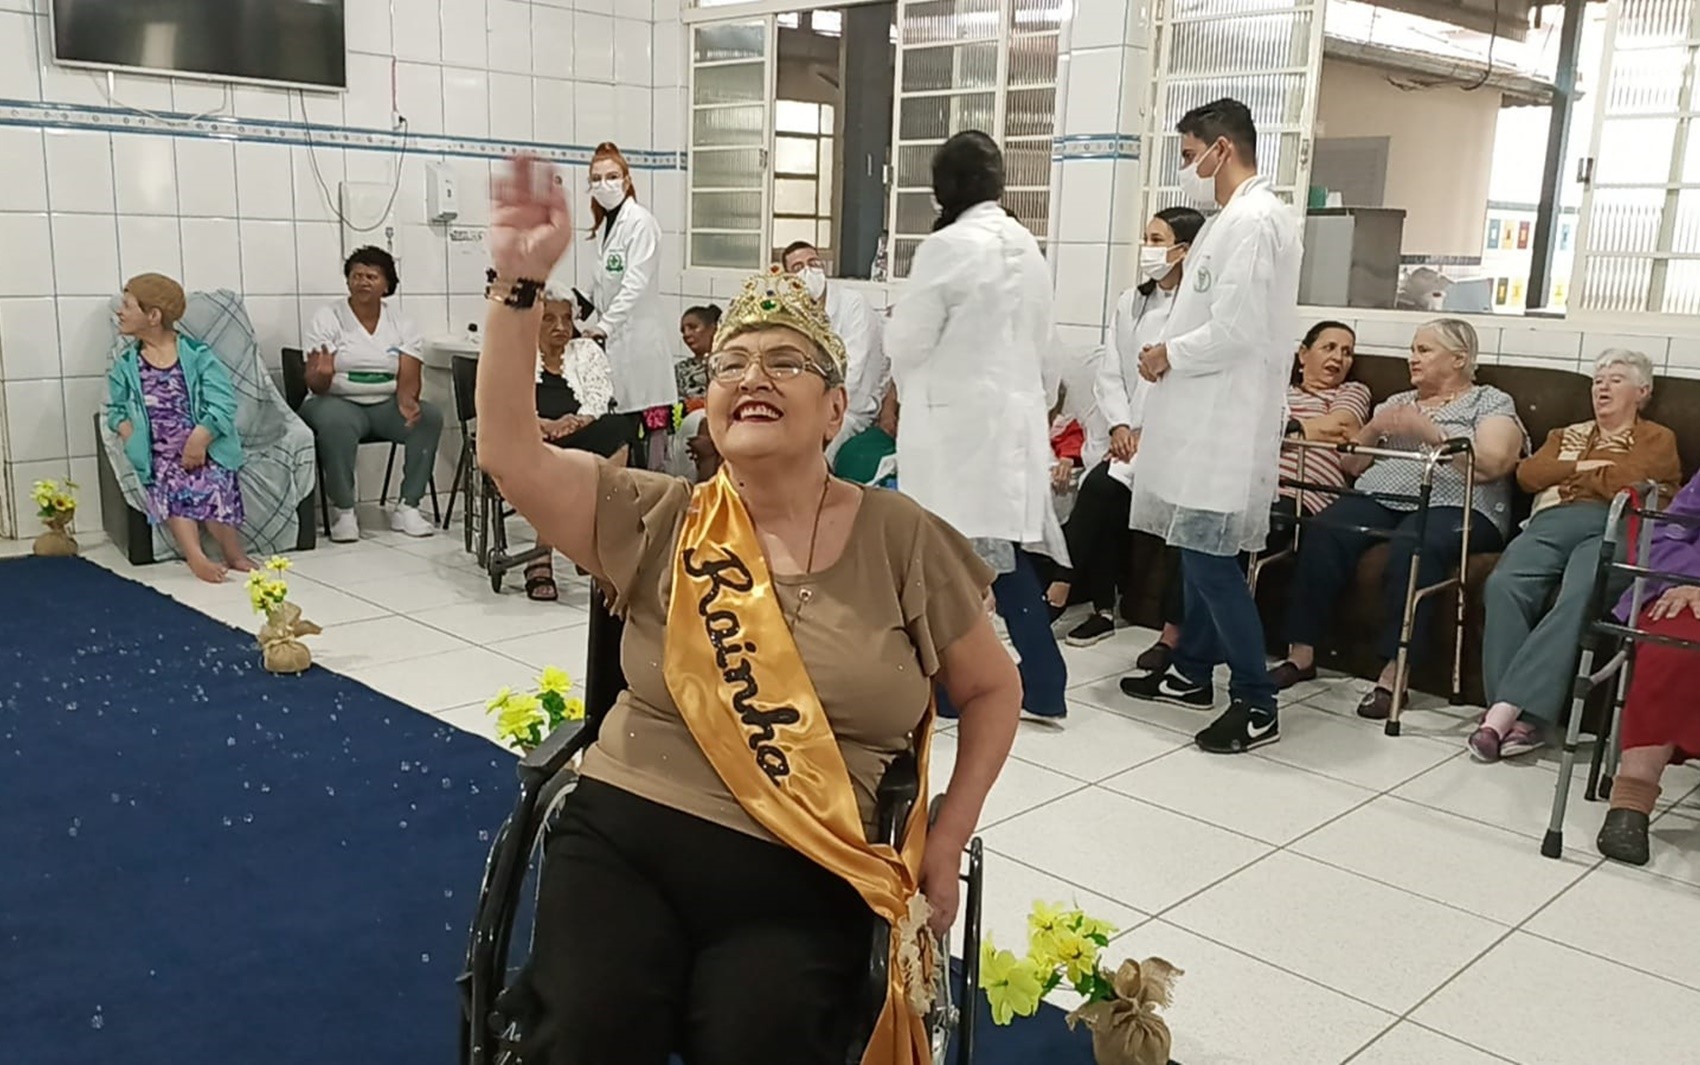 Asilo faz concurso de beleza entre moradores para celebrar Dia Internacional do Idoso em MG; veja FOTOS